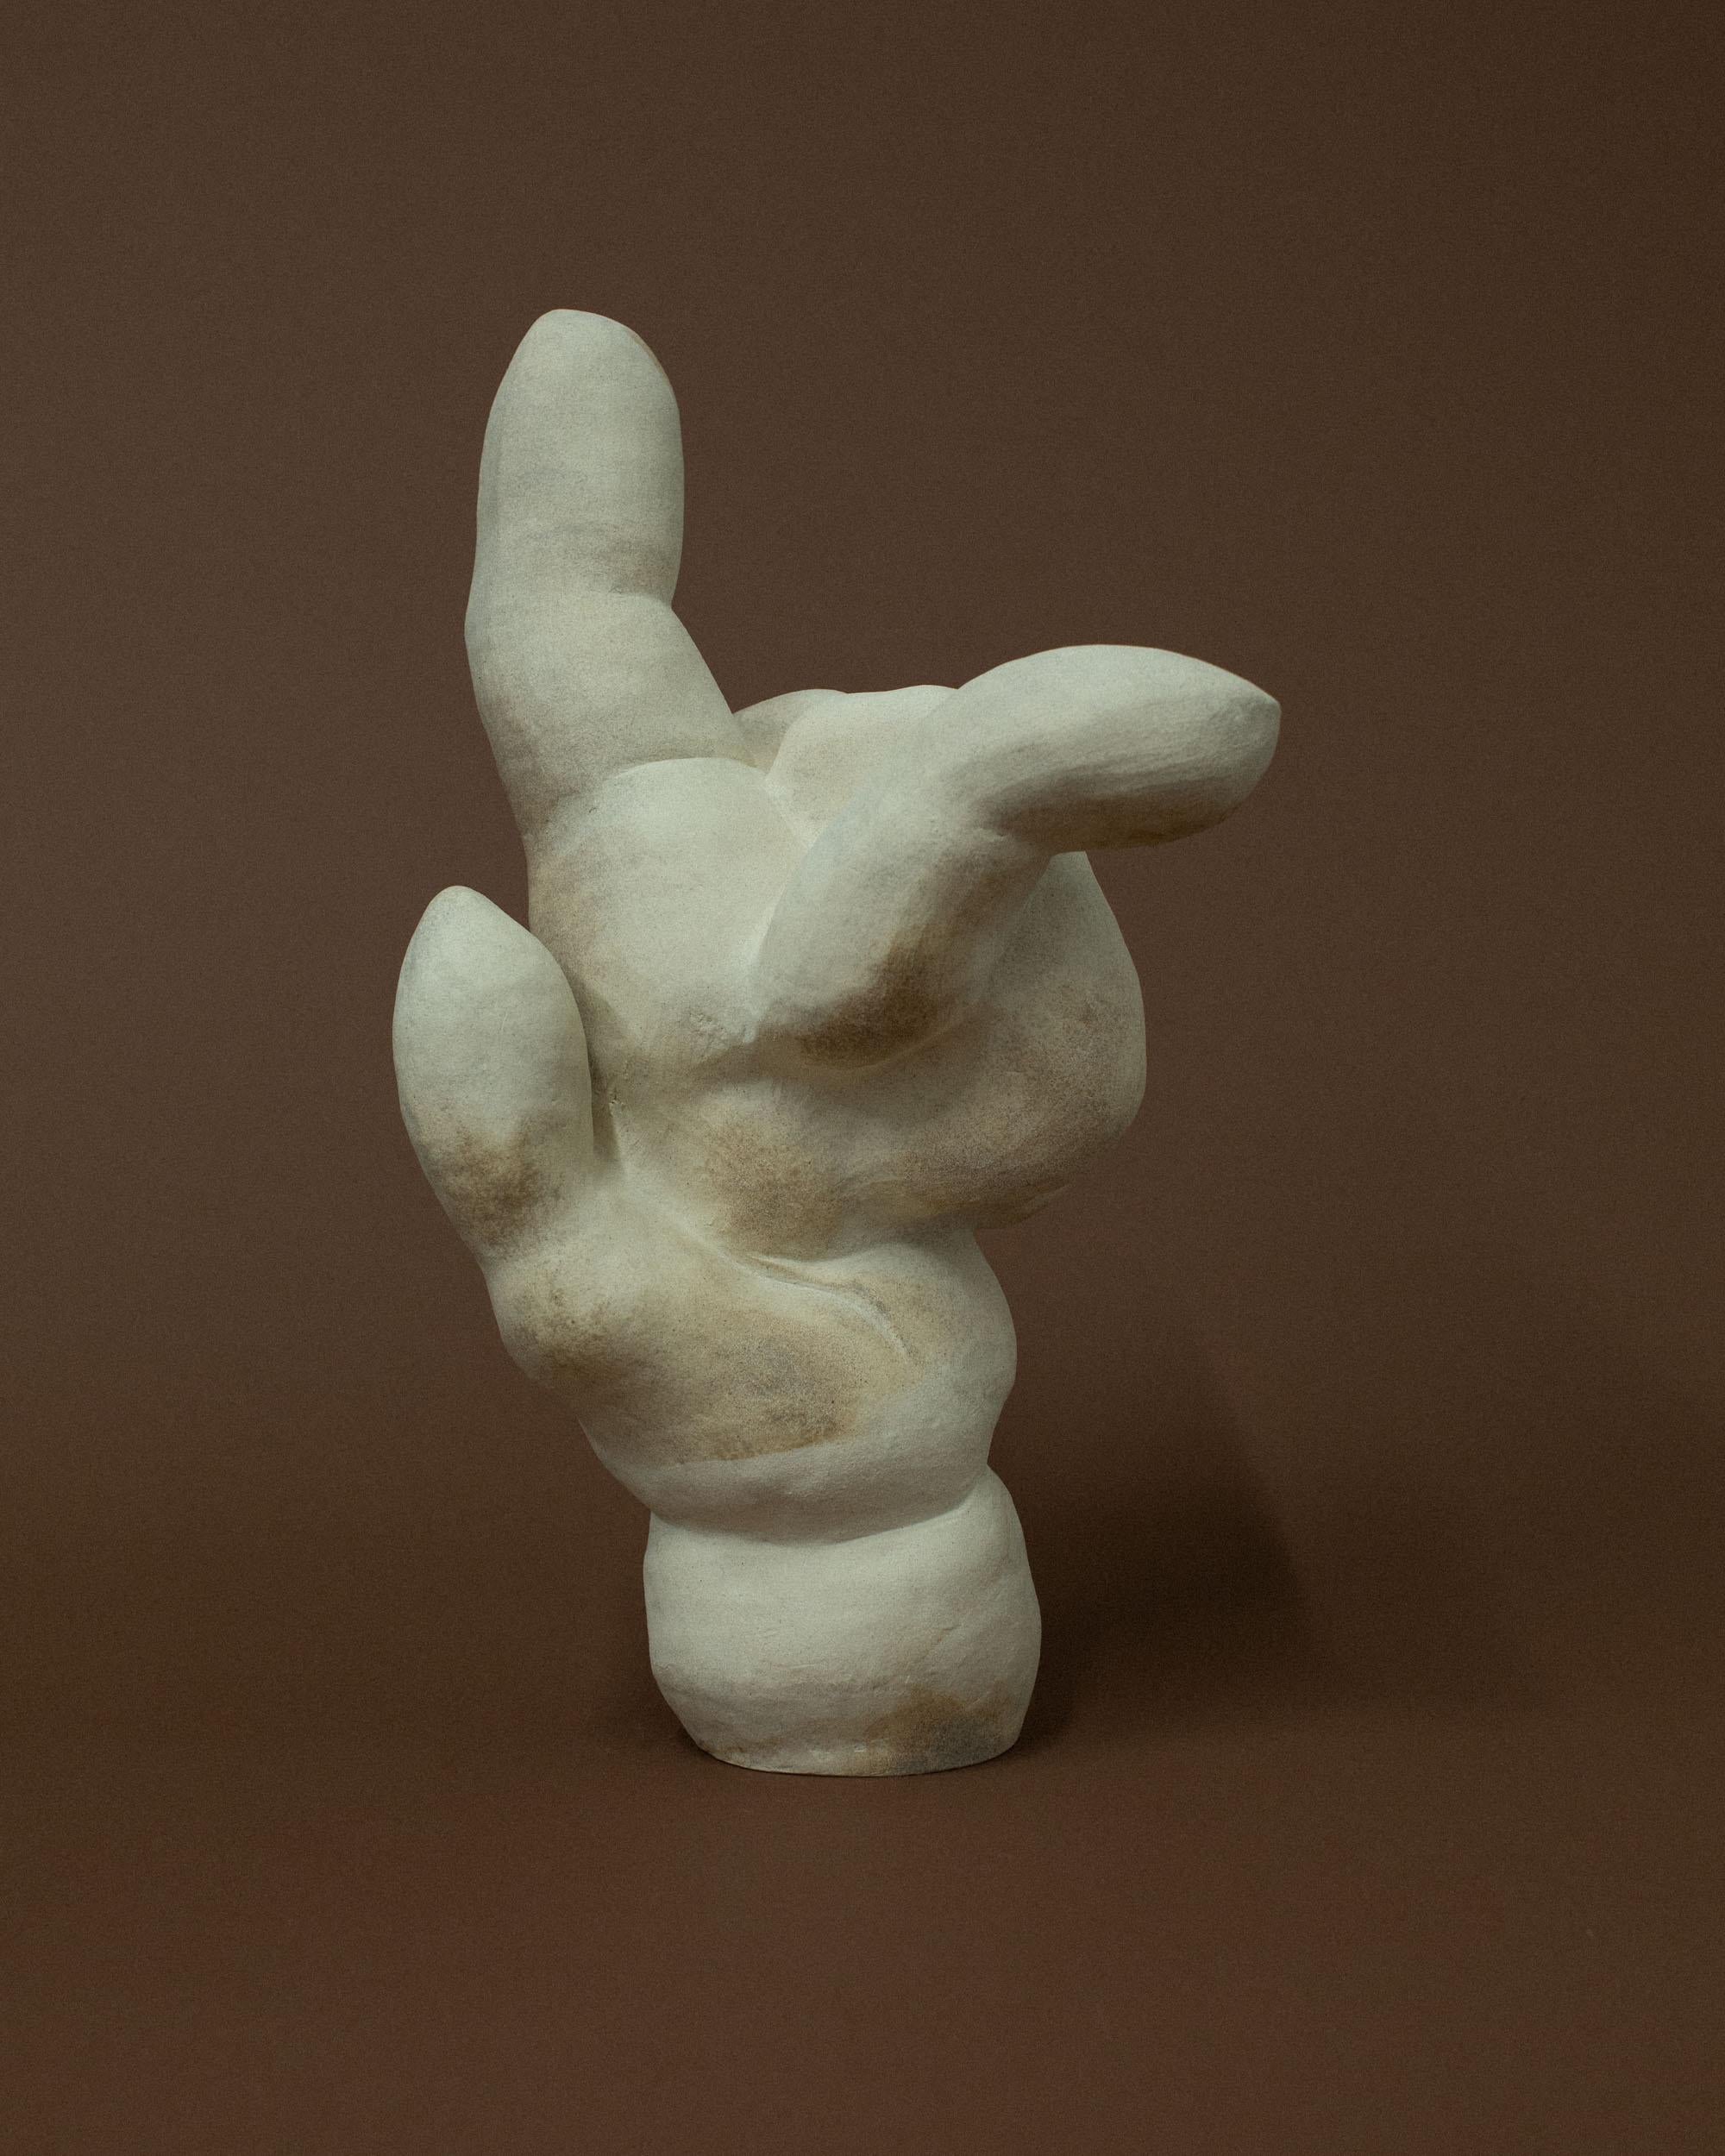 Sculpture naturelle pliante à la main par Common Body
Dimensions : L 31 x D 26 x H 49 cm
MATERIAL : Grès naturel

Nature body est un studio de sculpture et d'objets d'intérieur fondé par nathaniel kyung smith, un artiste dont la passion réside dans